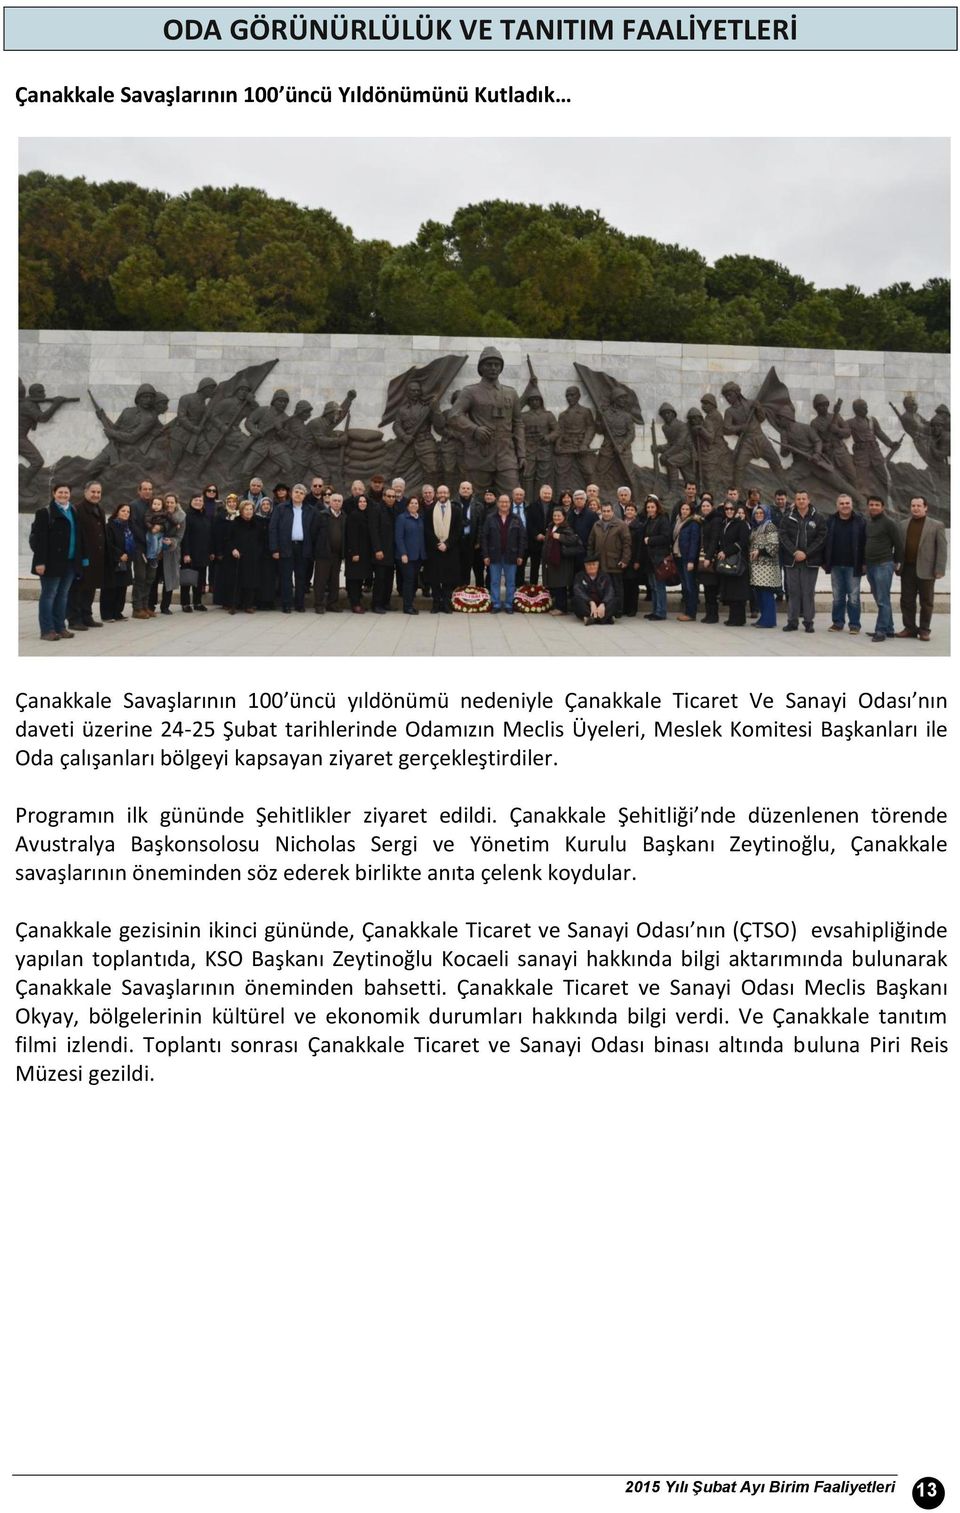 Çanakkale Şehitliği nde düzenlenen törende Avustralya Başkonsolosu Nicholas Sergi ve Yönetim Kurulu Başkanı Zeytinoğlu, Çanakkale savaşlarının öneminden söz ederek birlikte anıta çelenk koydular.